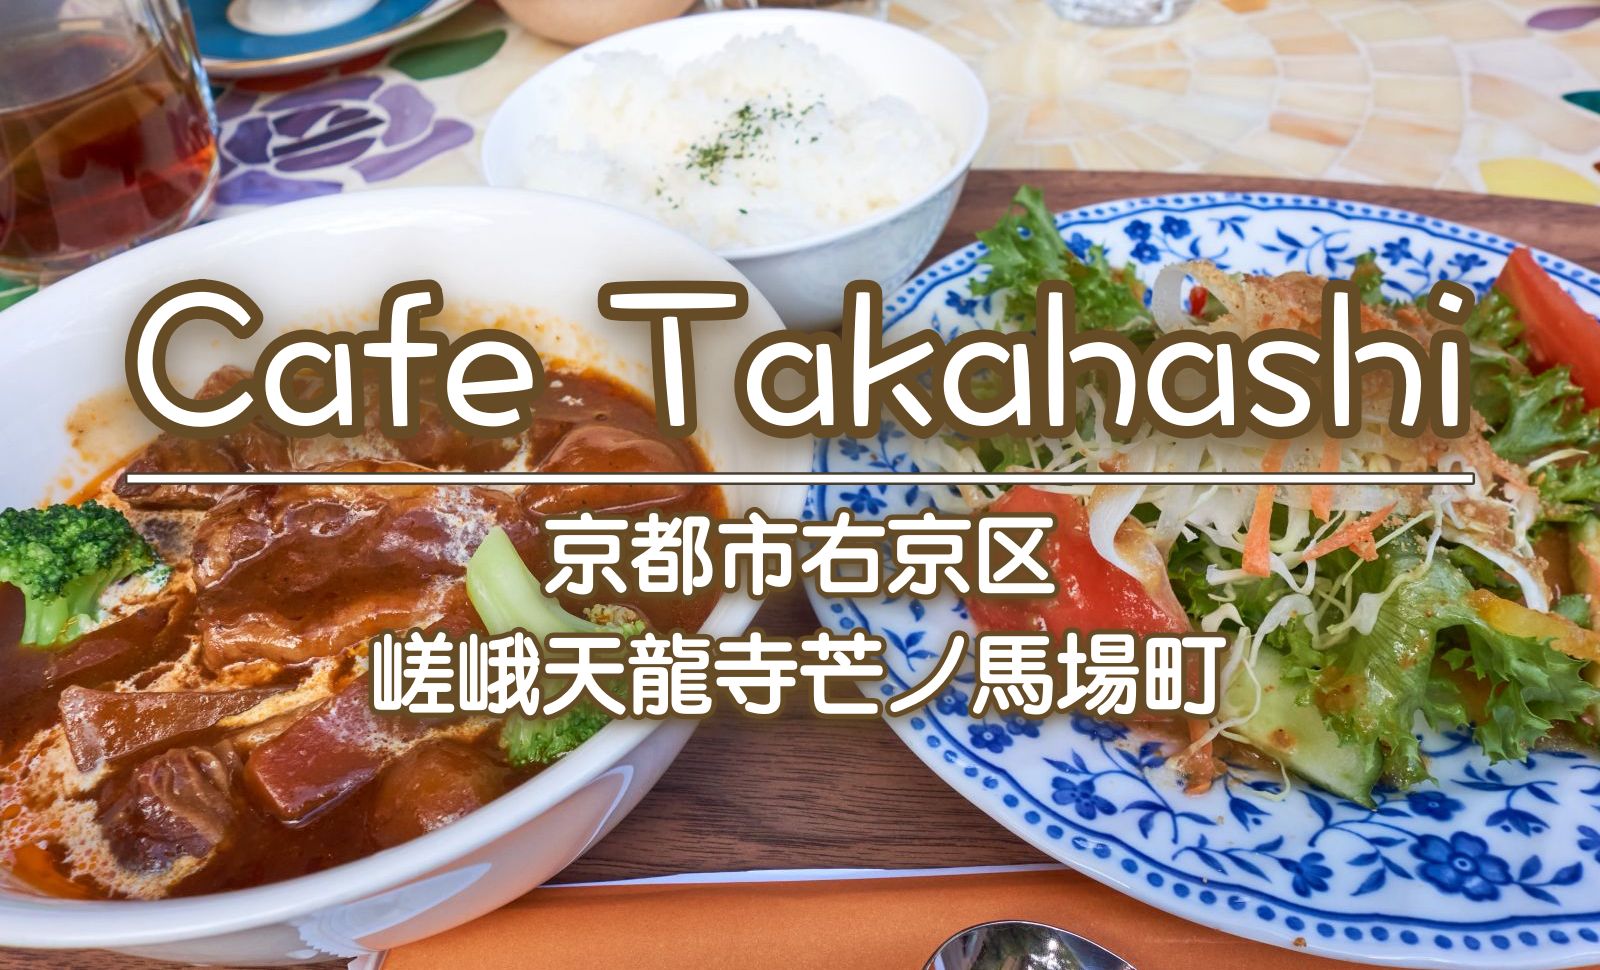 Cafe Takahashi